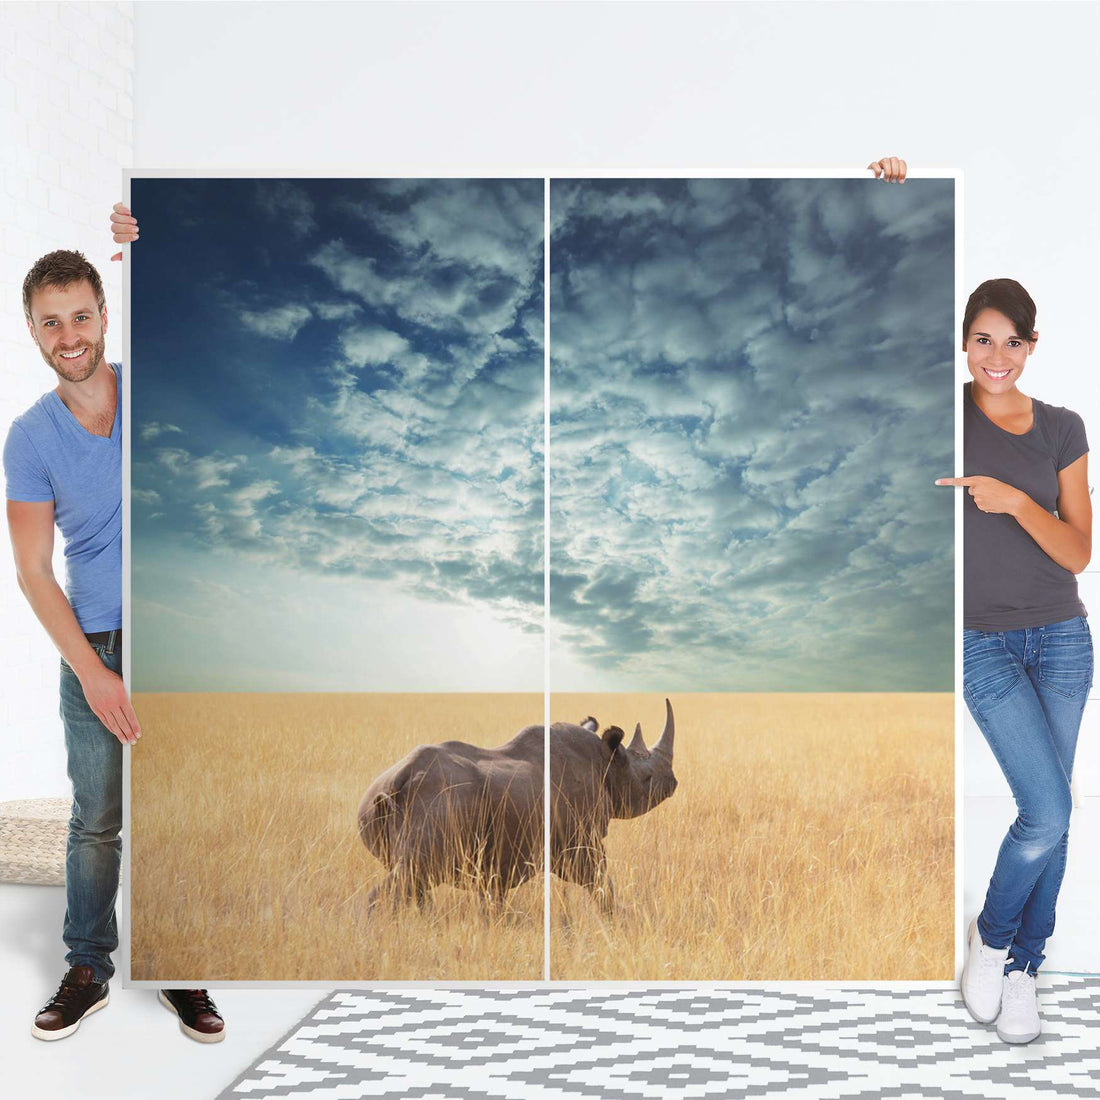 Möbel Klebefolie Rhino - IKEA Pax Schrank 201 cm Höhe - Schiebetür - Folie